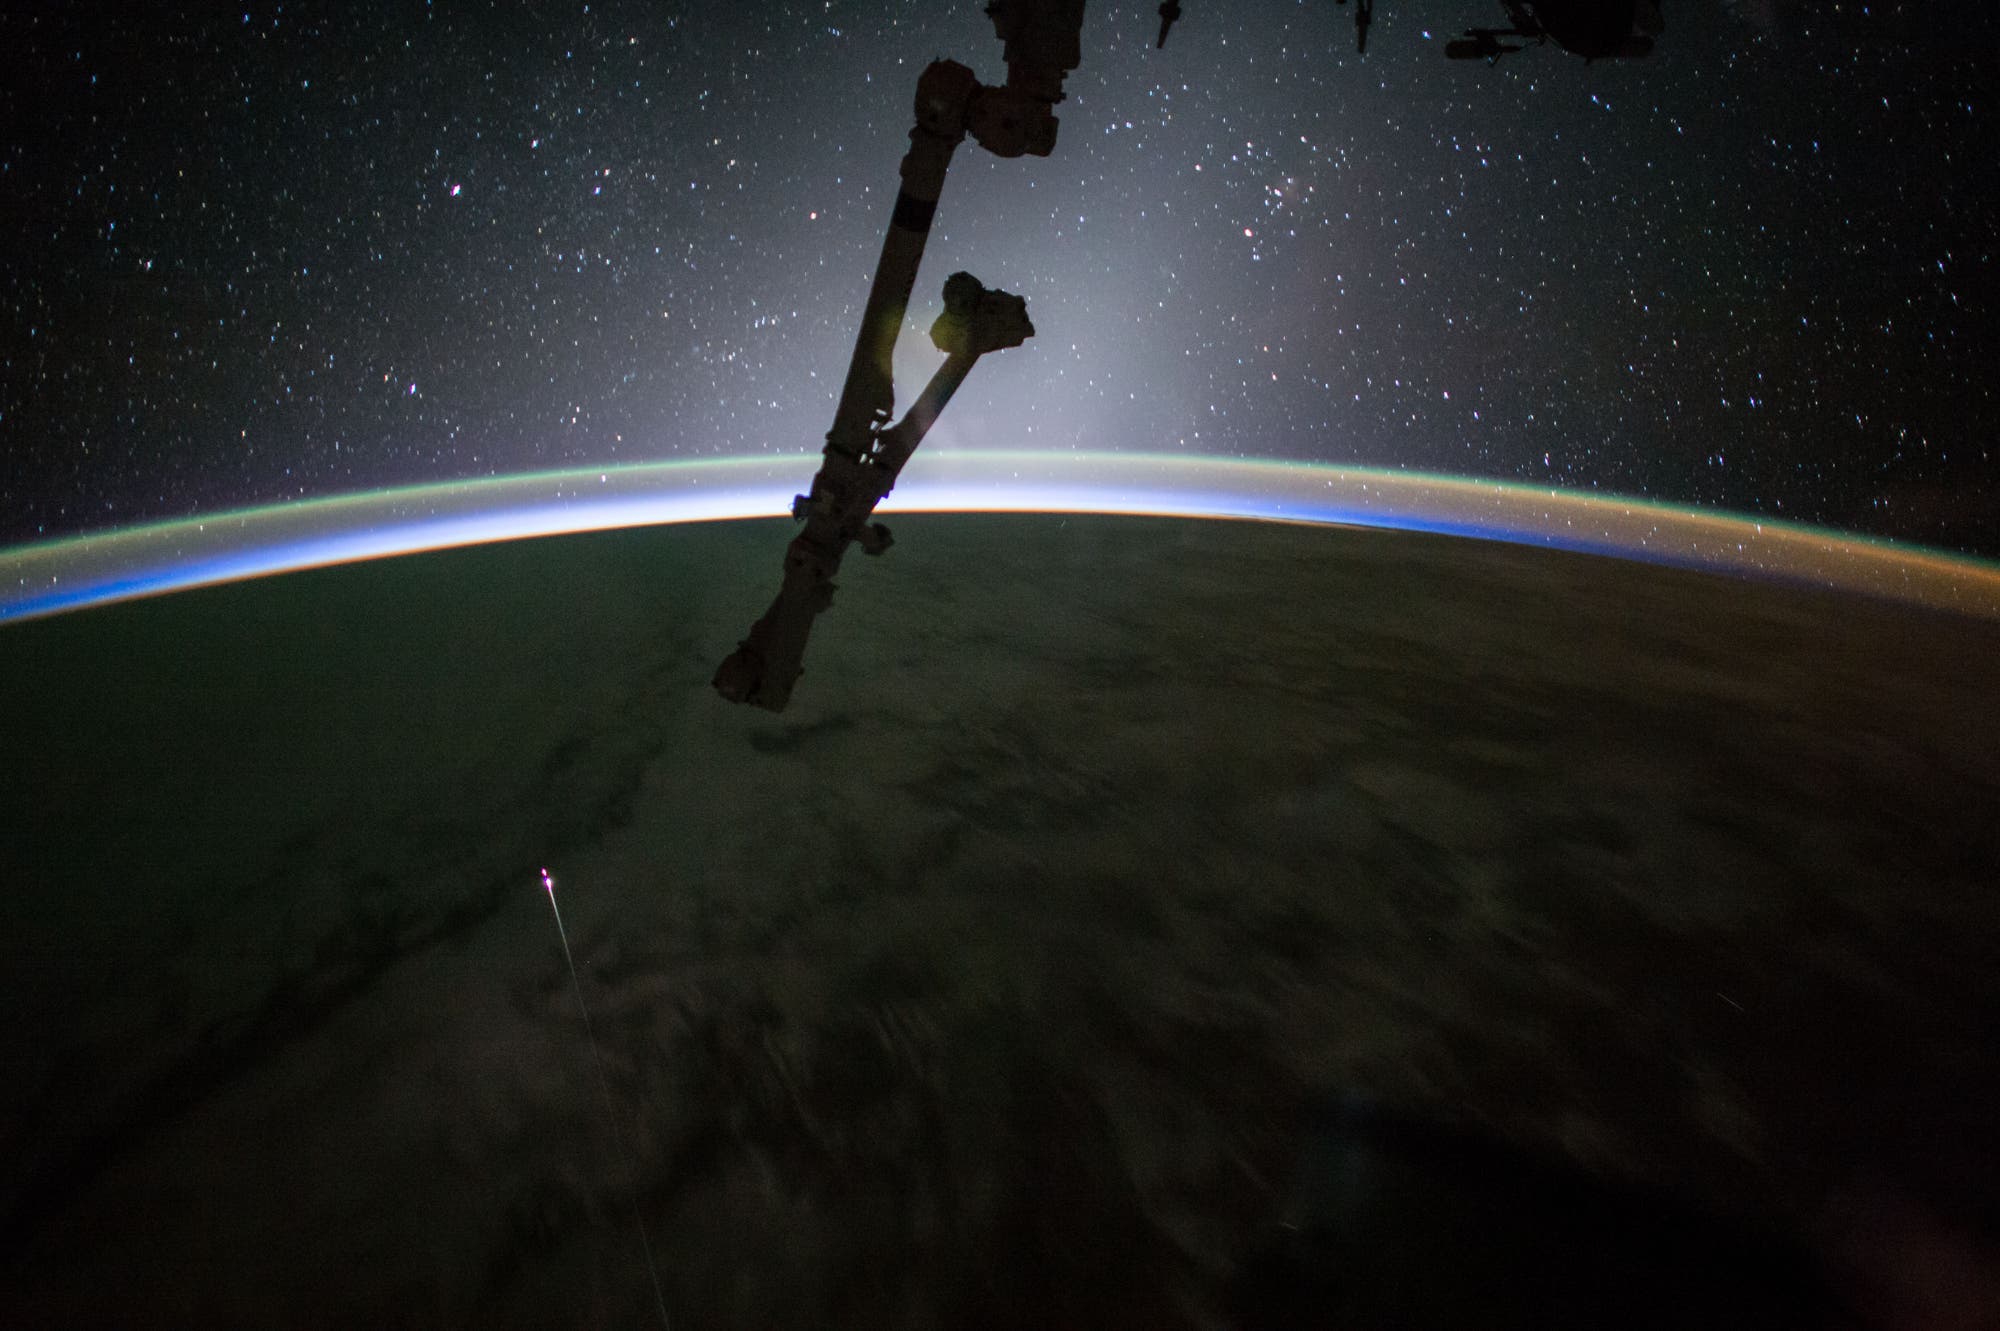 Die feurige Rückkehr der Raumkapsel Dragon am 3. Juli 2017, gesehen von der ISS